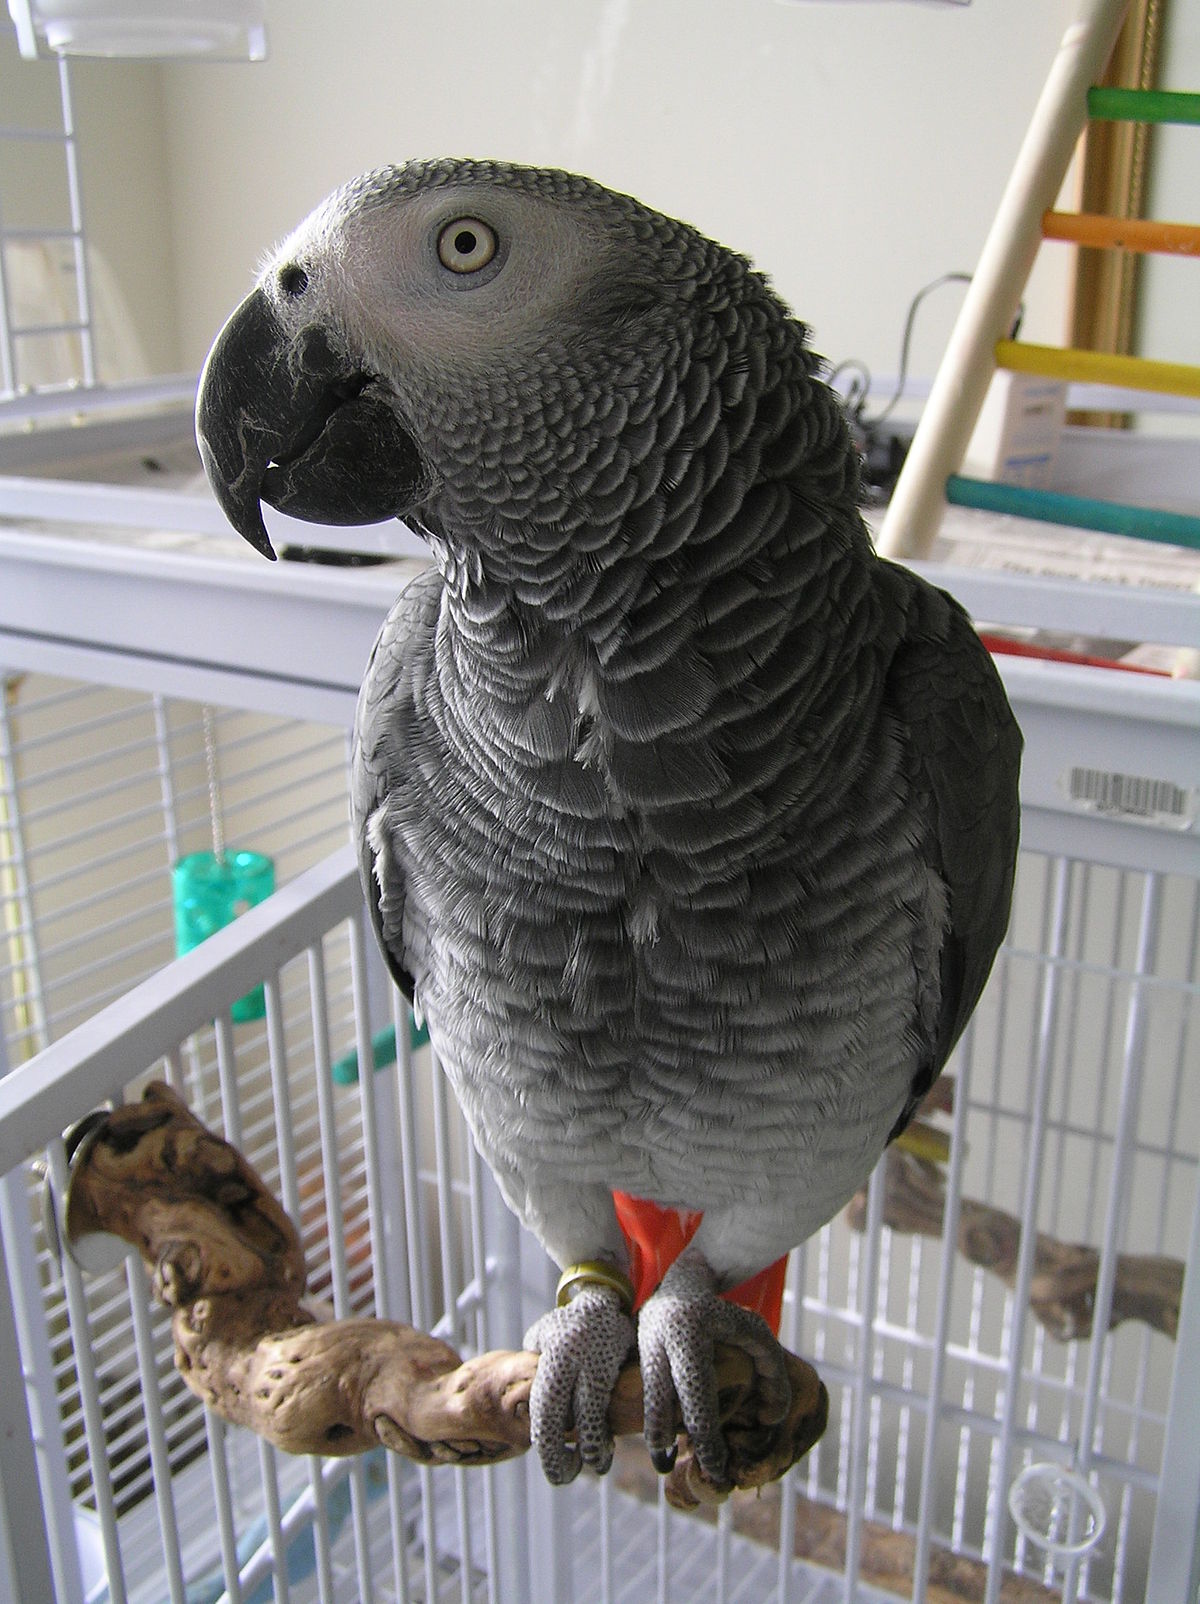 Companion parrot - Wikipedia